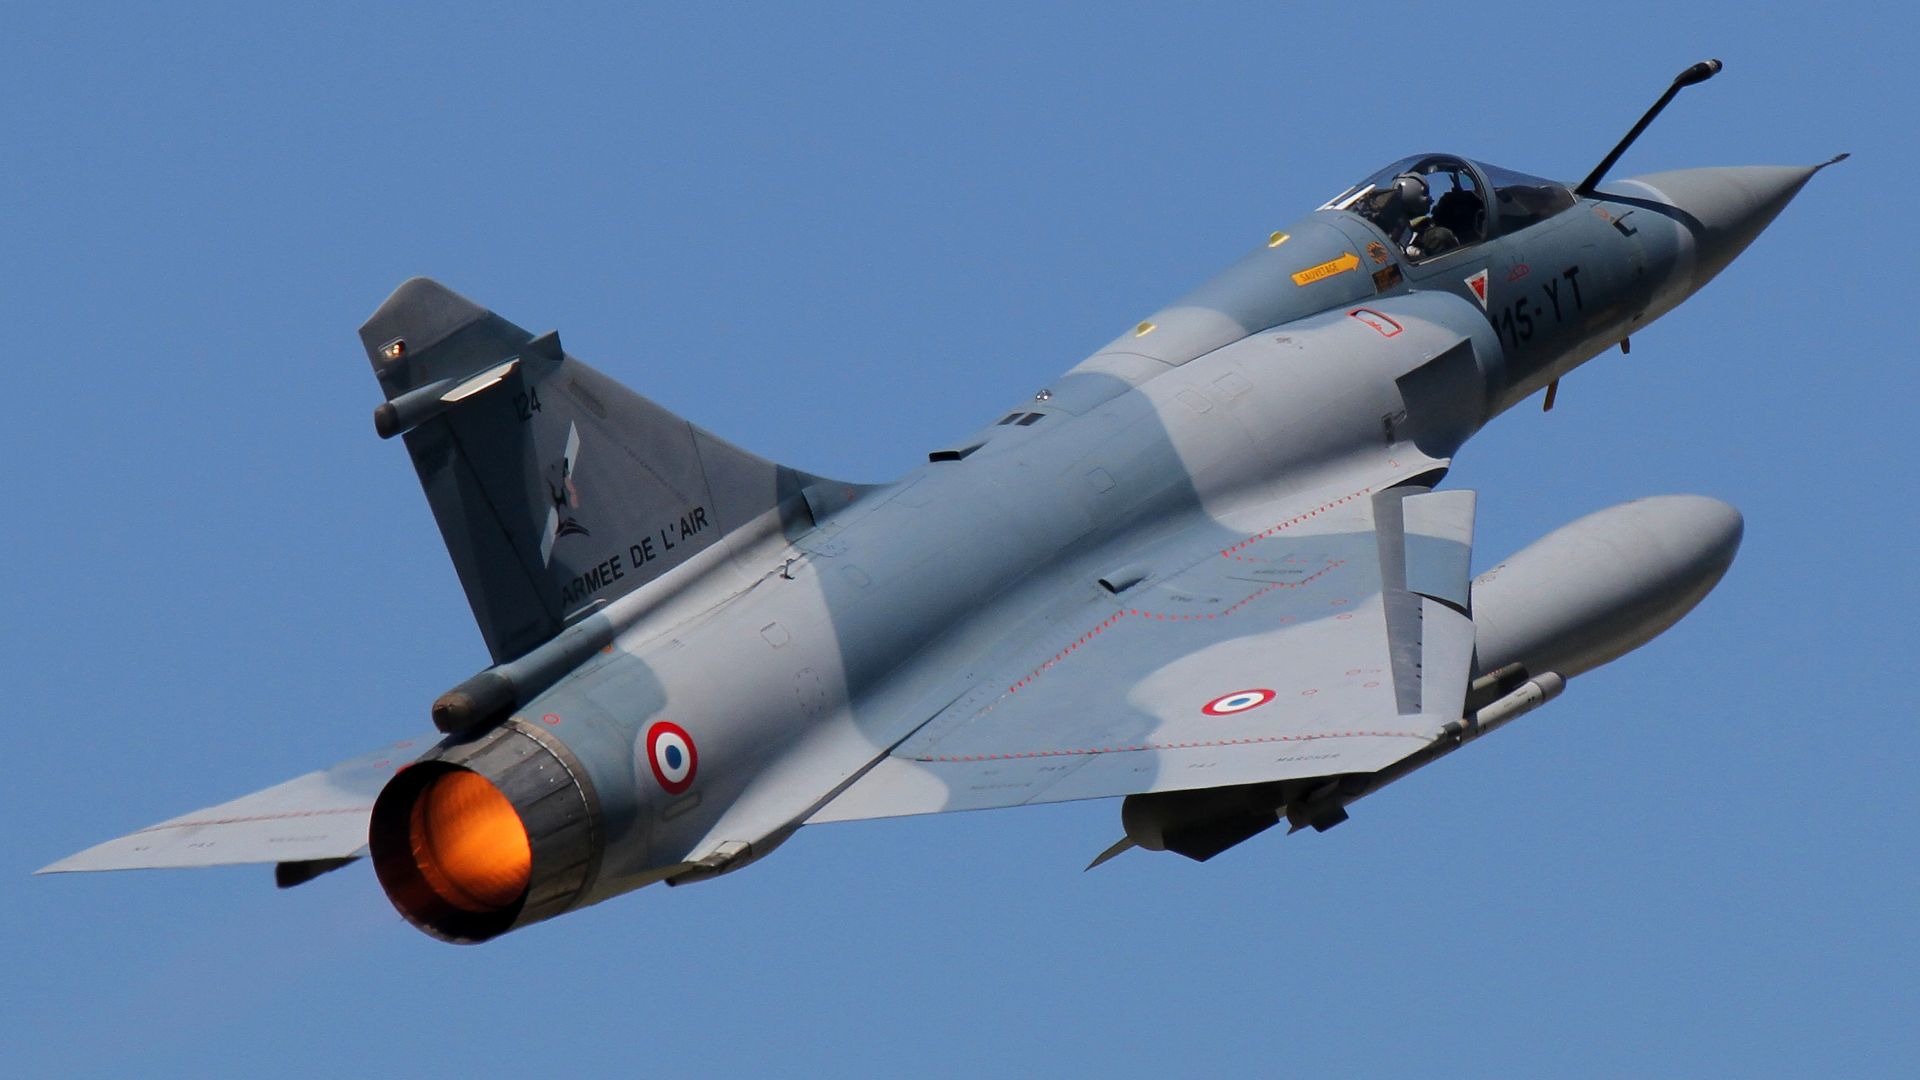 Дассаулт Мираж 2000, истребитель, ВВС Франции, Dassault Mirage 2000, fighter aircraft, French Air Force (horizontal)